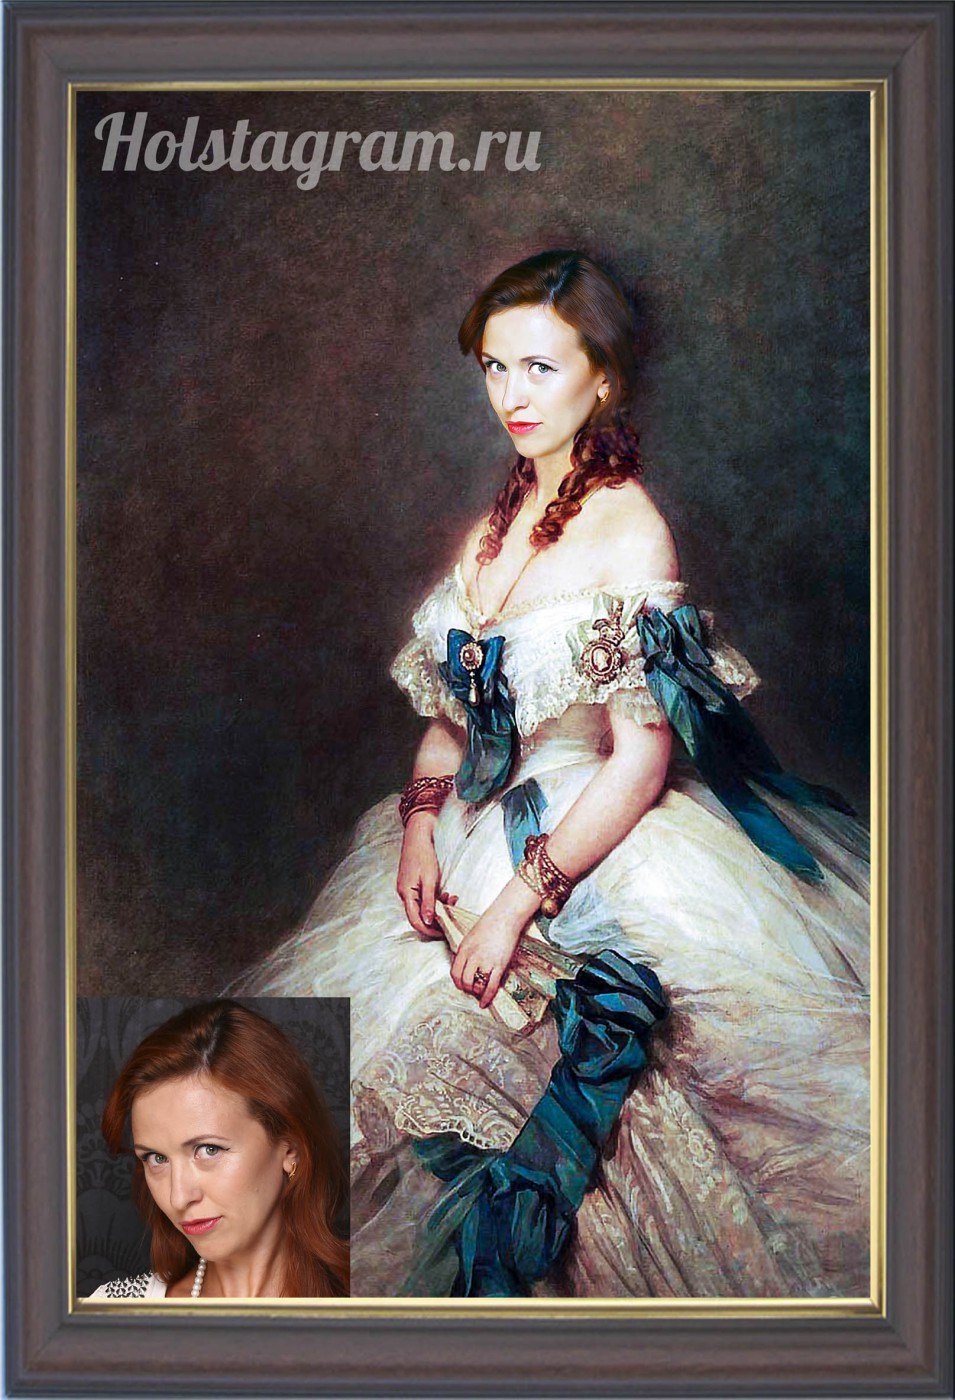 Портрет женский в историческом образе на холсте